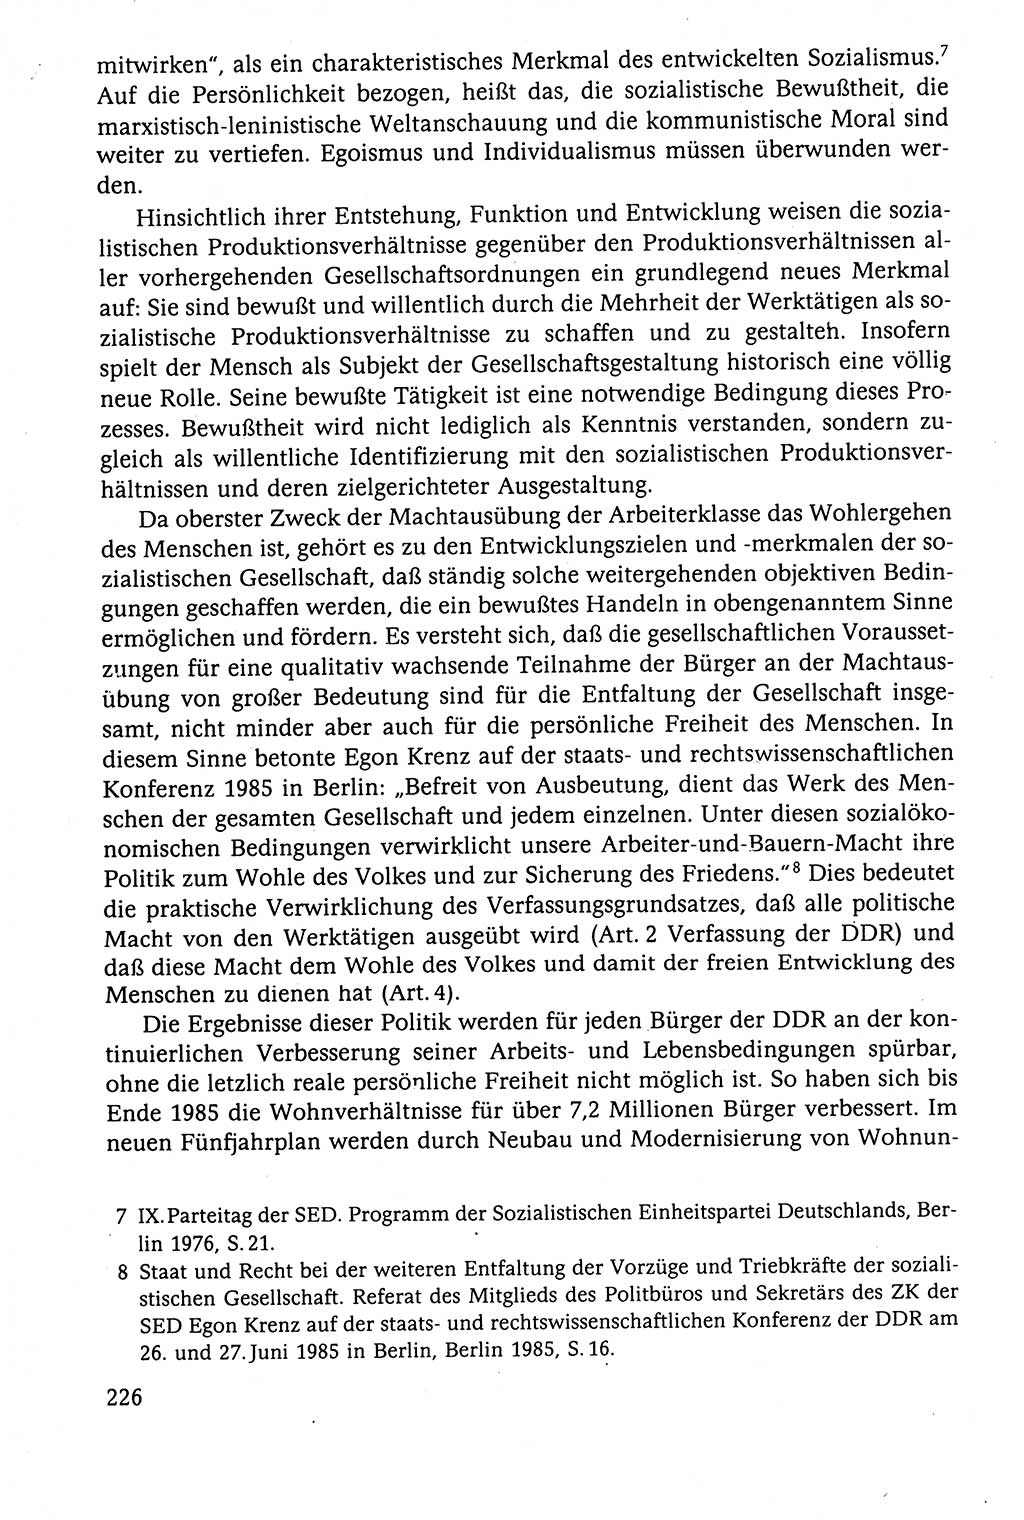 Der Staat im politischen System der DDR (Deutsche Demokratische Republik) 1986, Seite 226 (St. pol. Sys. DDR 1986, S. 226)